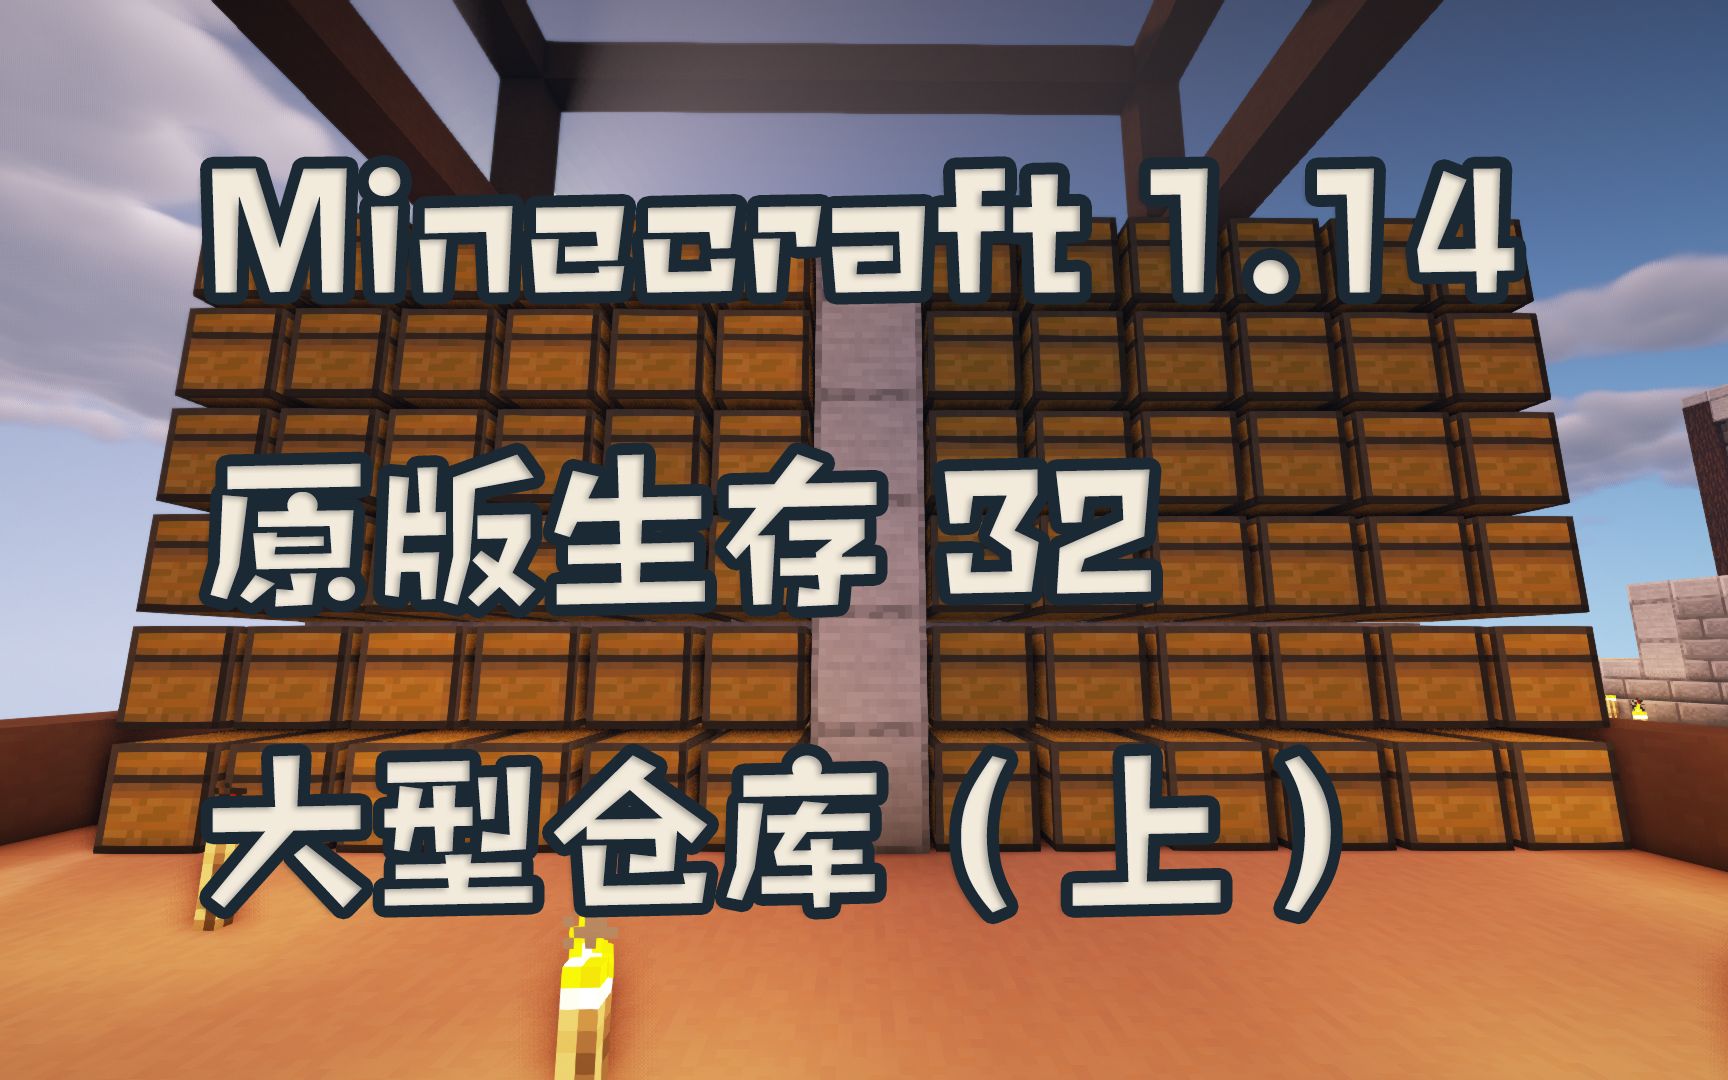 晓月zero Minecraft 我的世界 1 14原版生存32 大型仓库 上 哔哩哔哩 つロ干杯 Bilibili